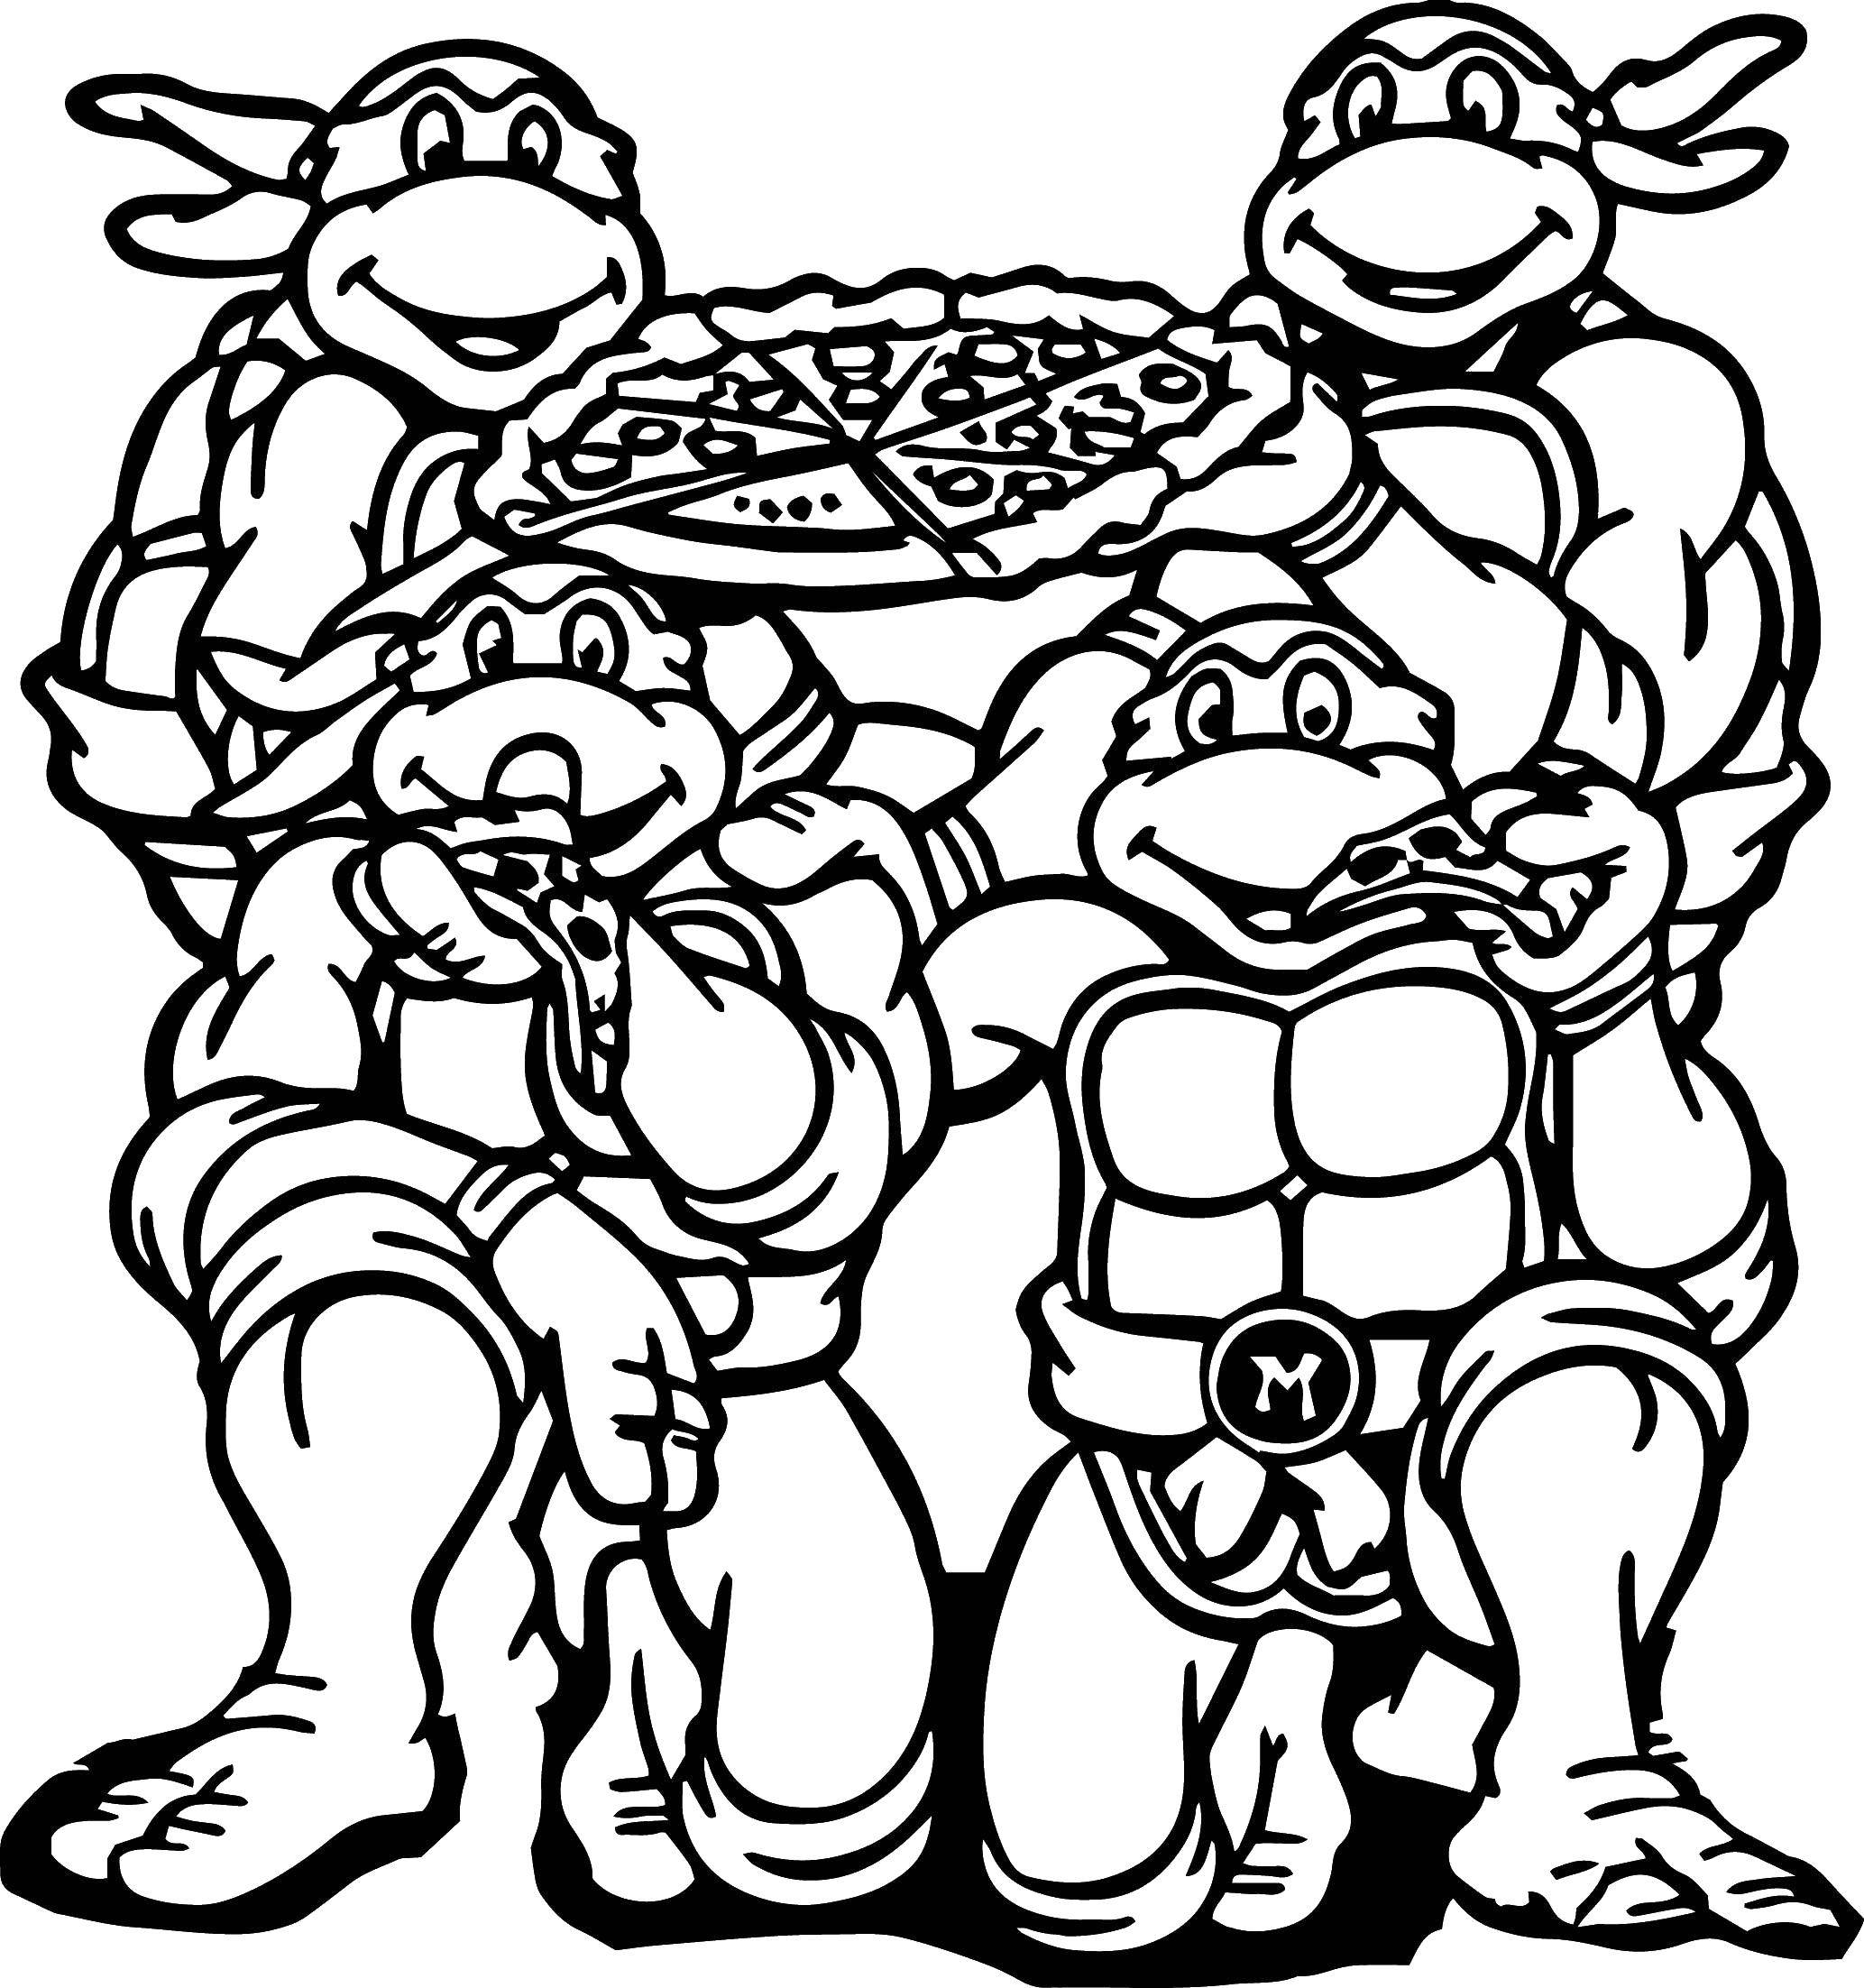 Coloring Teenage mutant ninja turtles and pizza. Category ninja . Tags:  turtle, ninja, pizza.